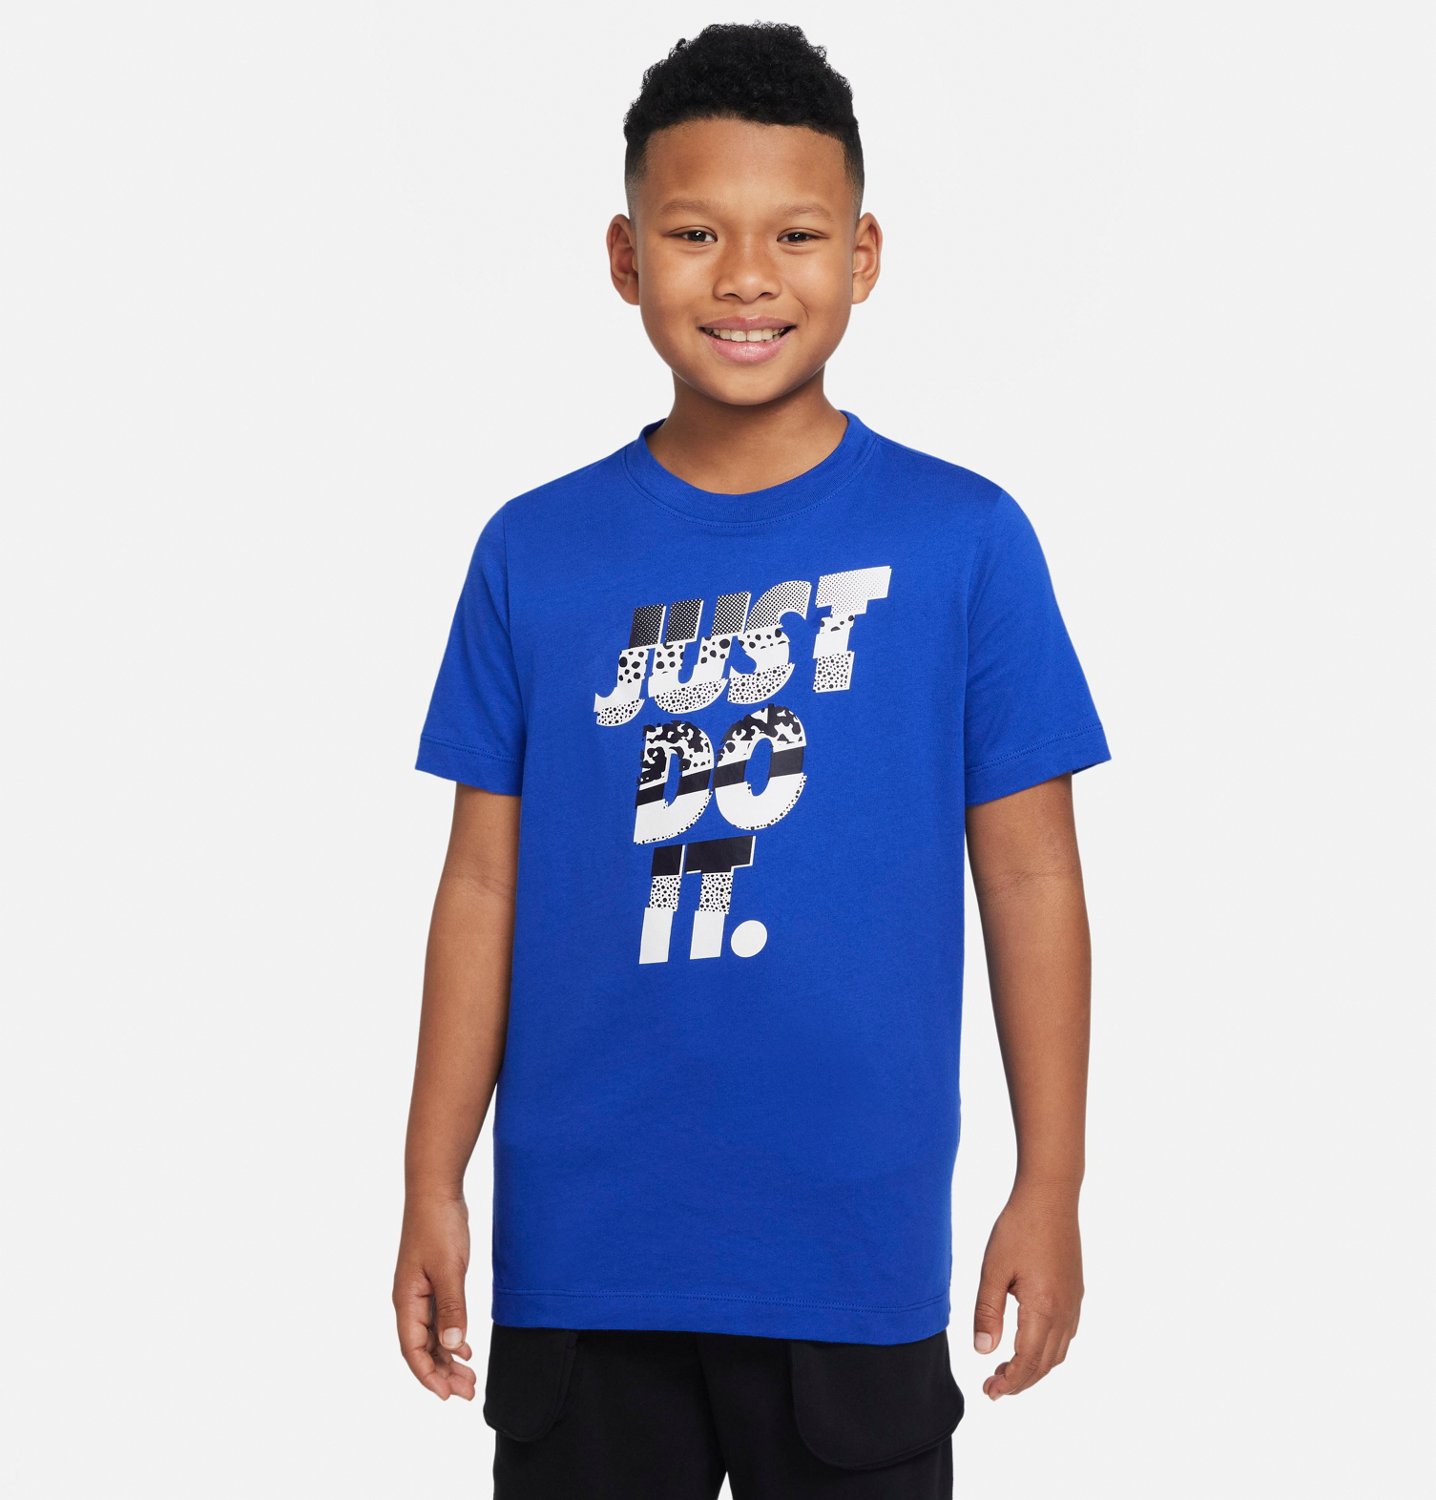 Nike Boys' Core Brandmark Training Graphic T-shirt | Academy